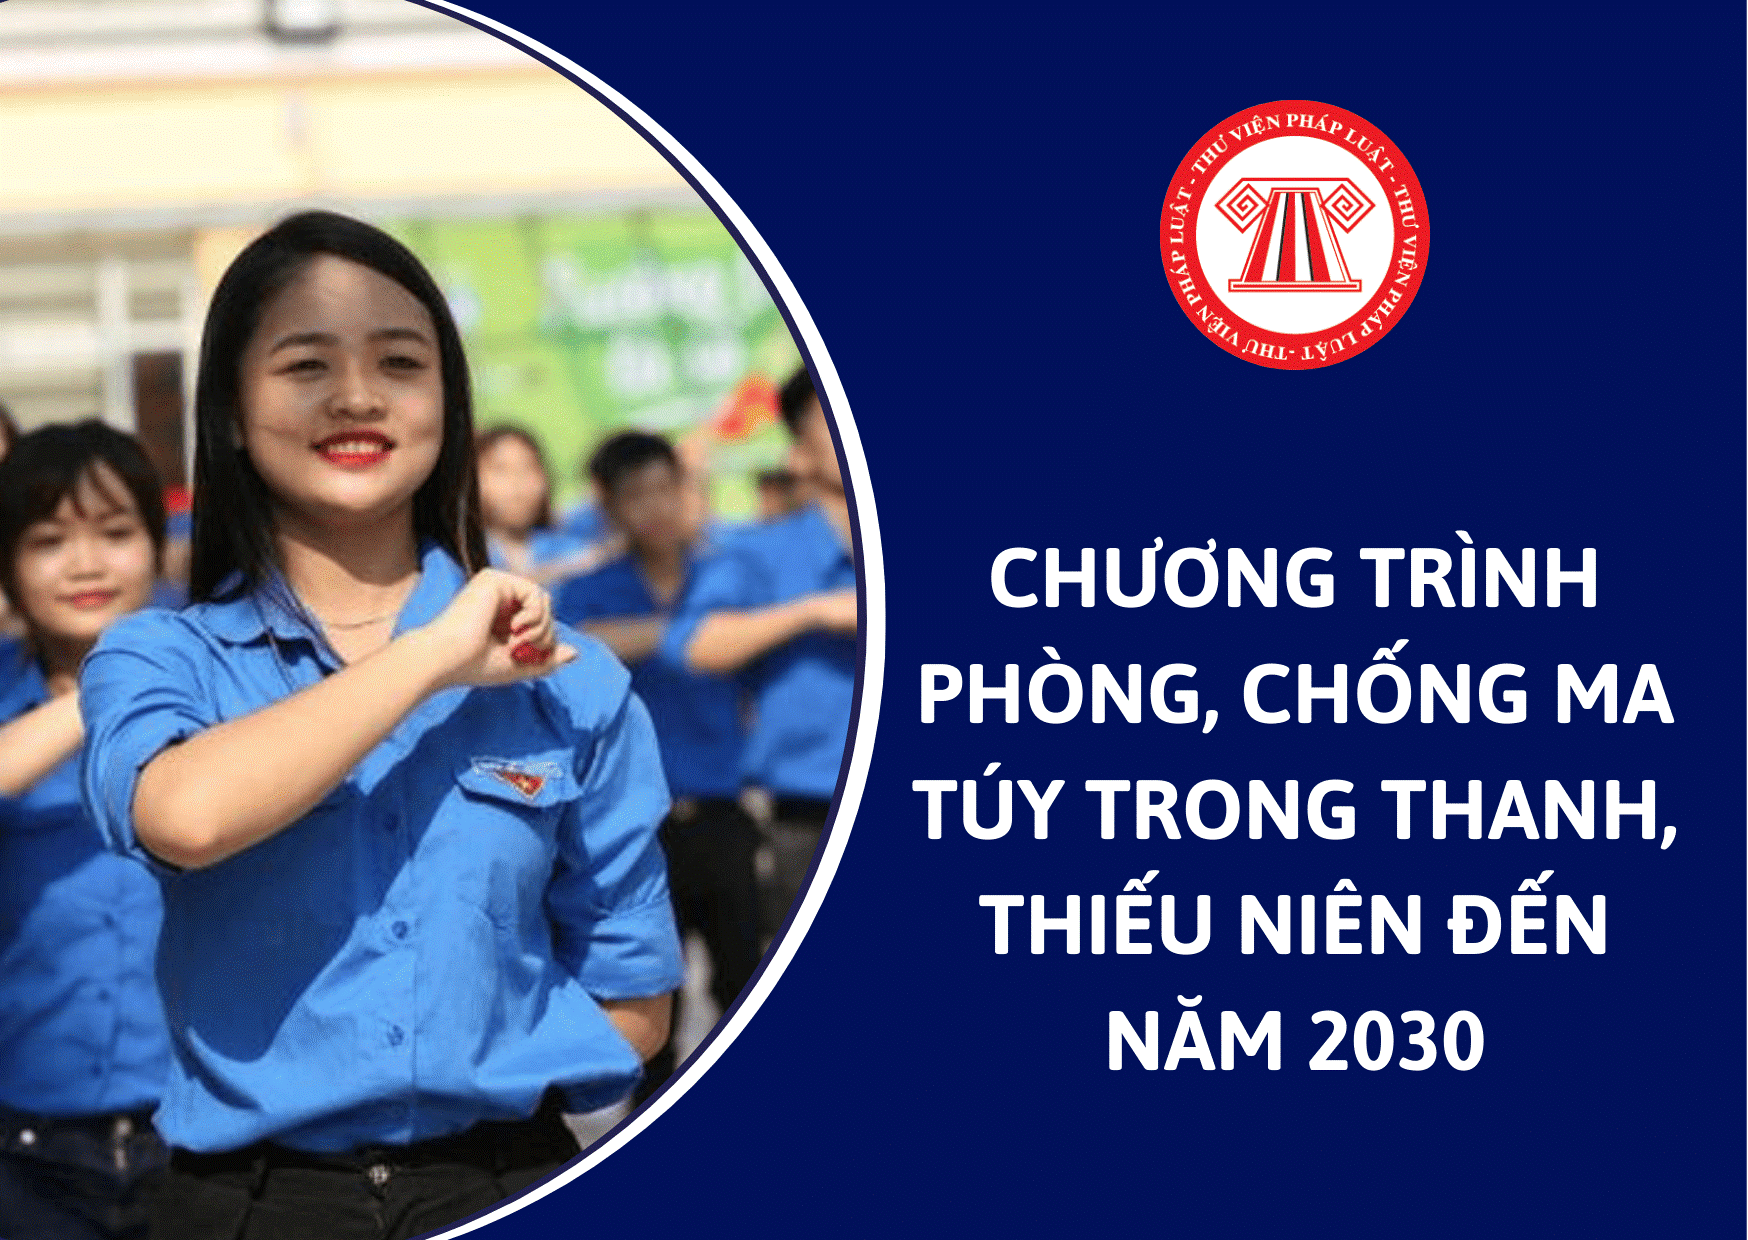 Kế hoạch triển khai thực hiện Chương trình phòng, chống ma túy trong thanh thiếu niên đến năm 2030 trên địa bàn tỉnh Nam Định 